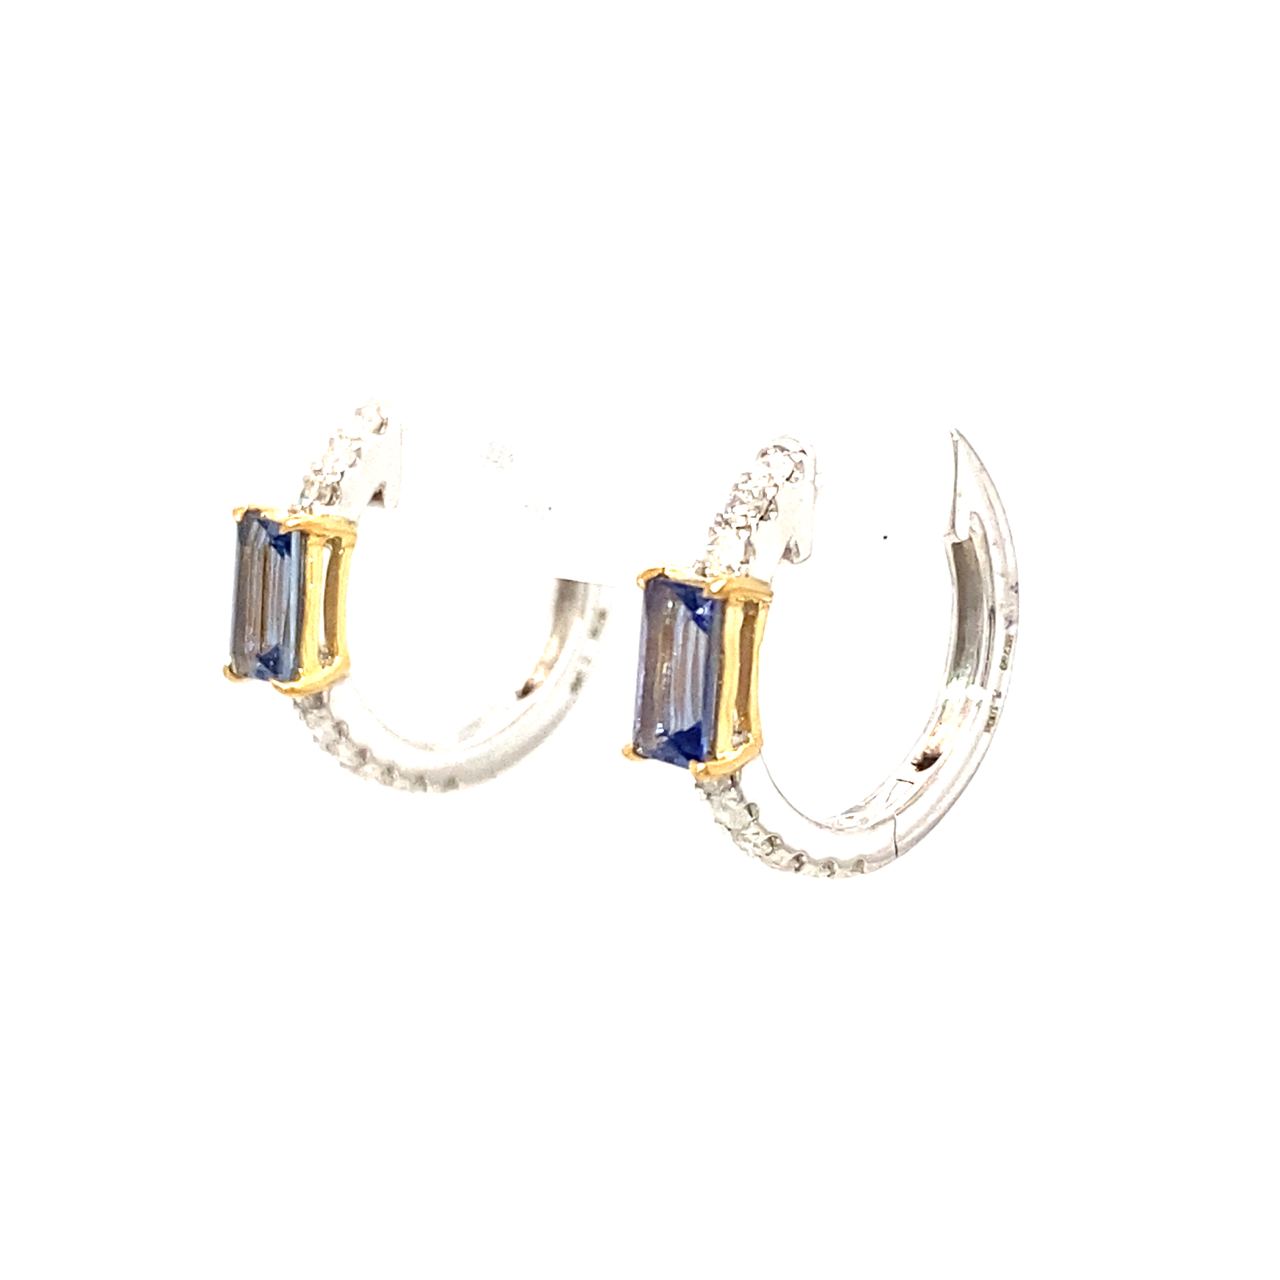 18K White Gold Sapphire Diamond Earring